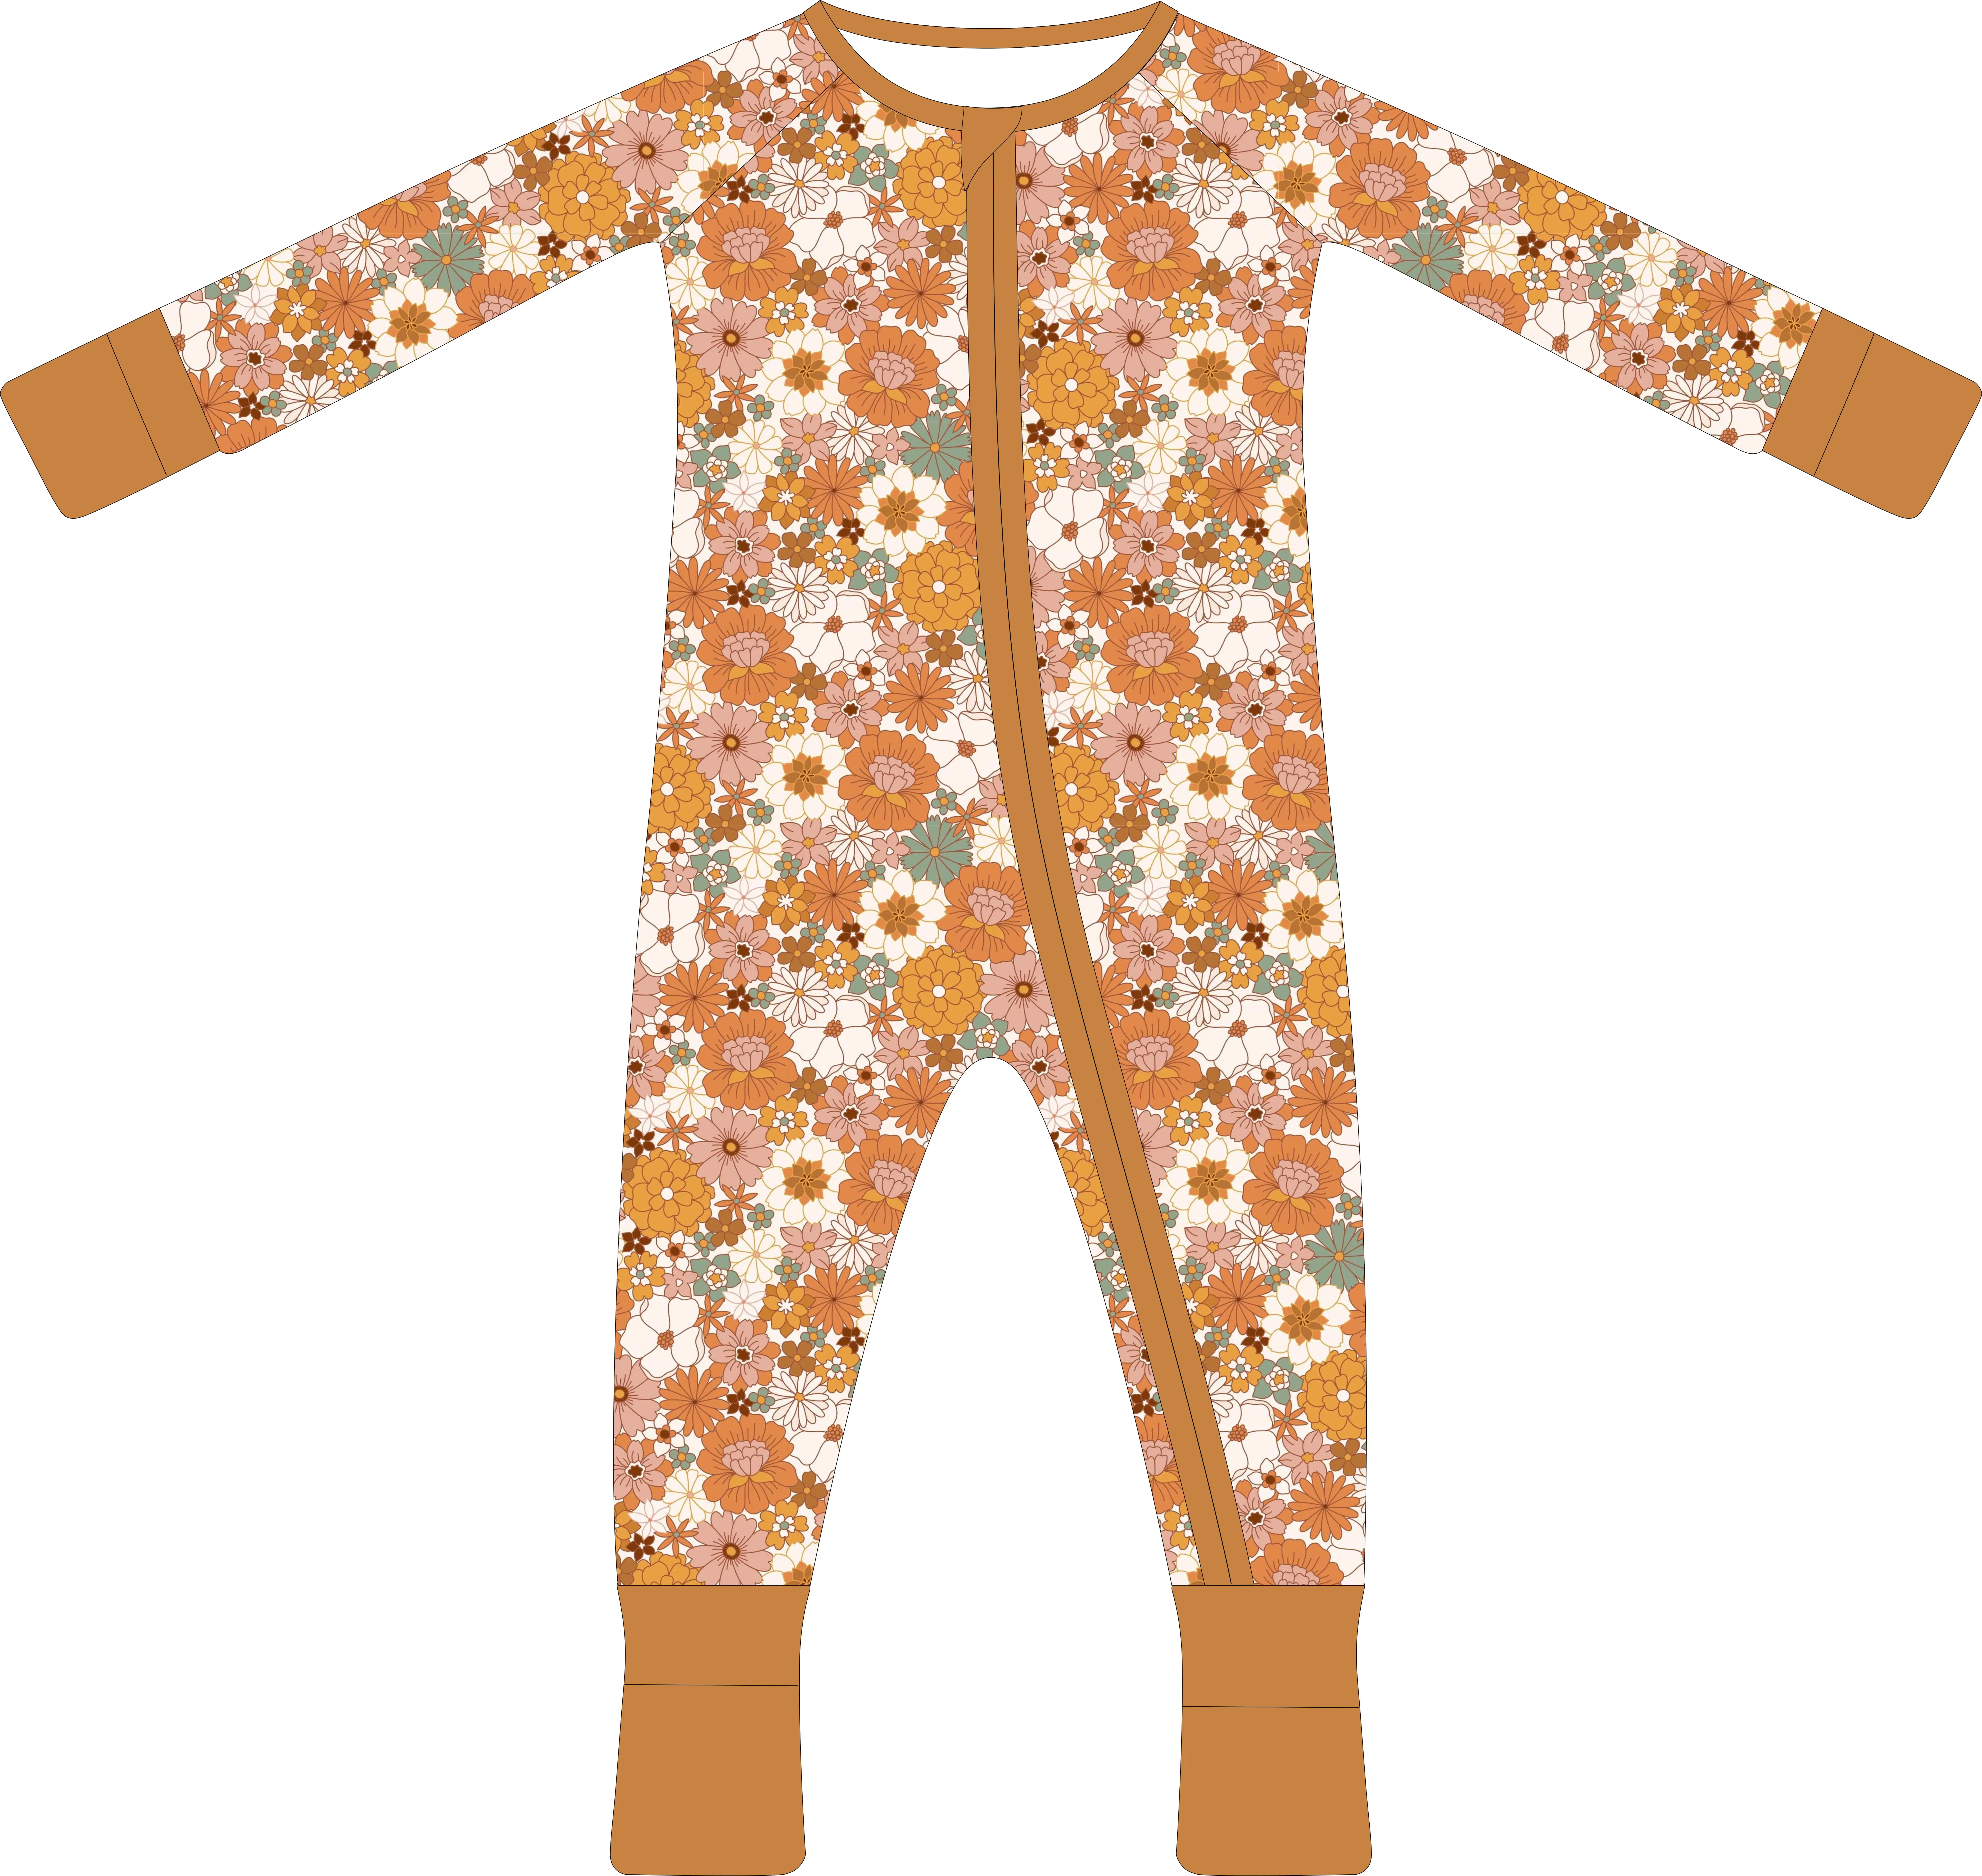 Özel baskı bebek bebek organik 95% bambu 5% Spandex Rompers tulum giysileri yürüyor çocuk pijama pijama giyim bebek için